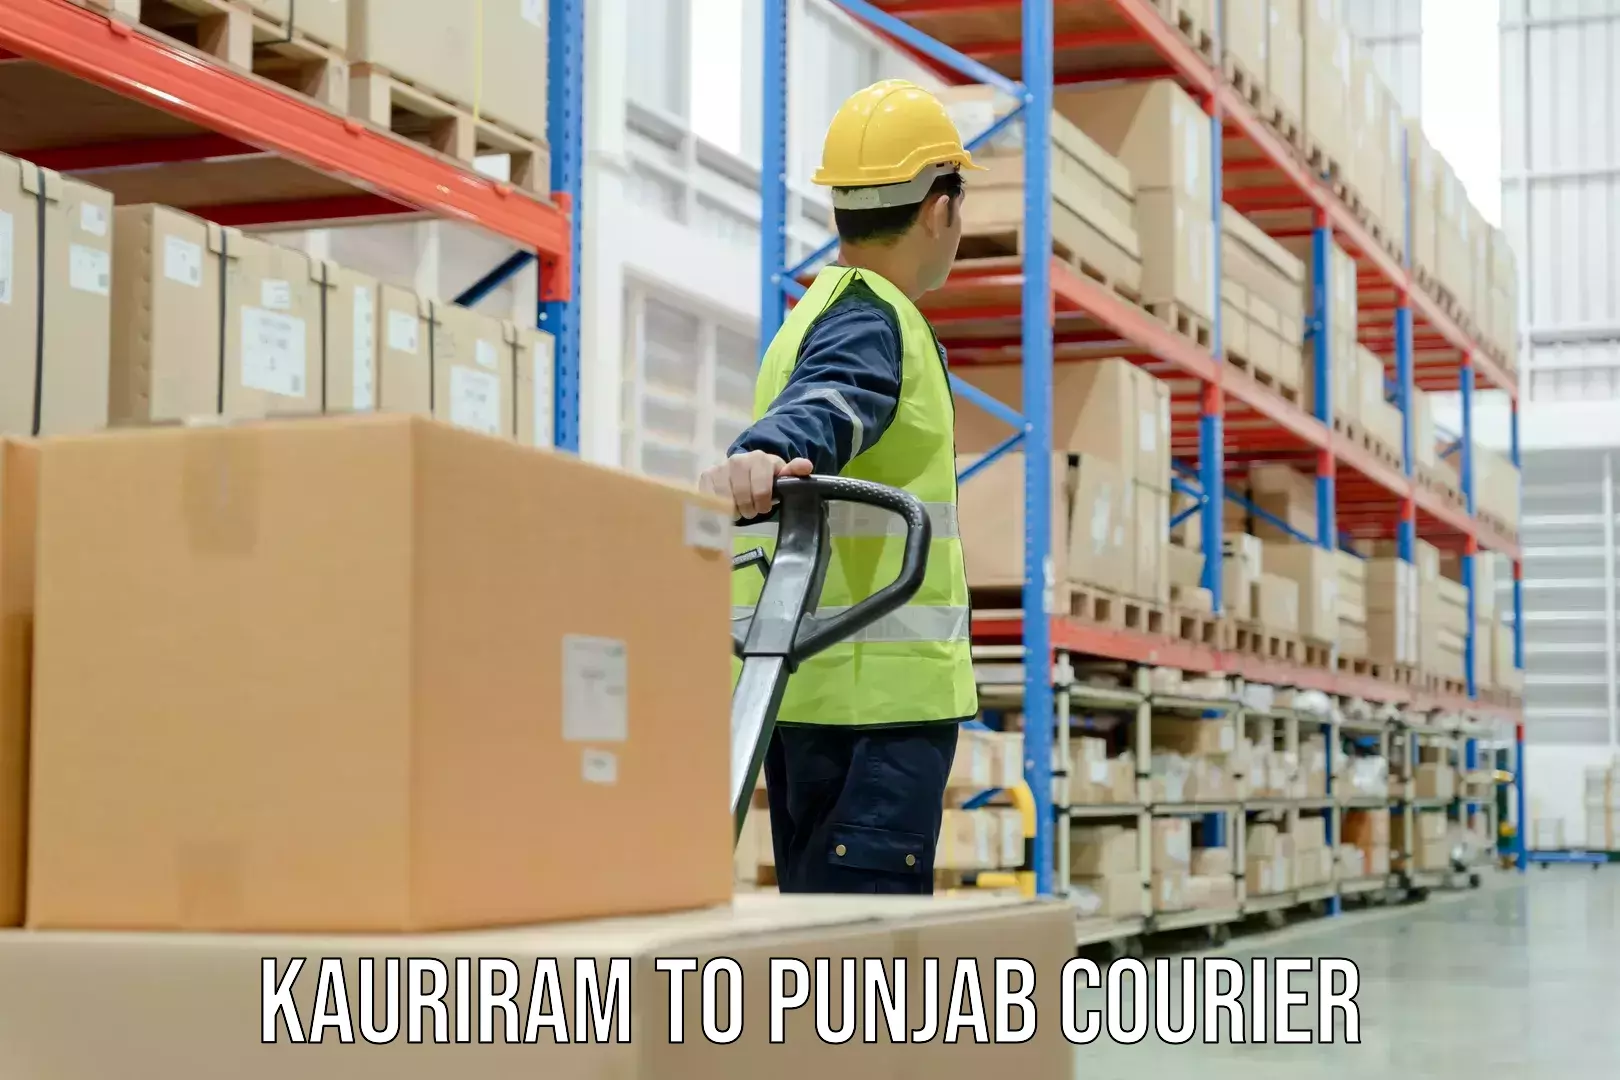 Tracking updates Kauriram to Punjab